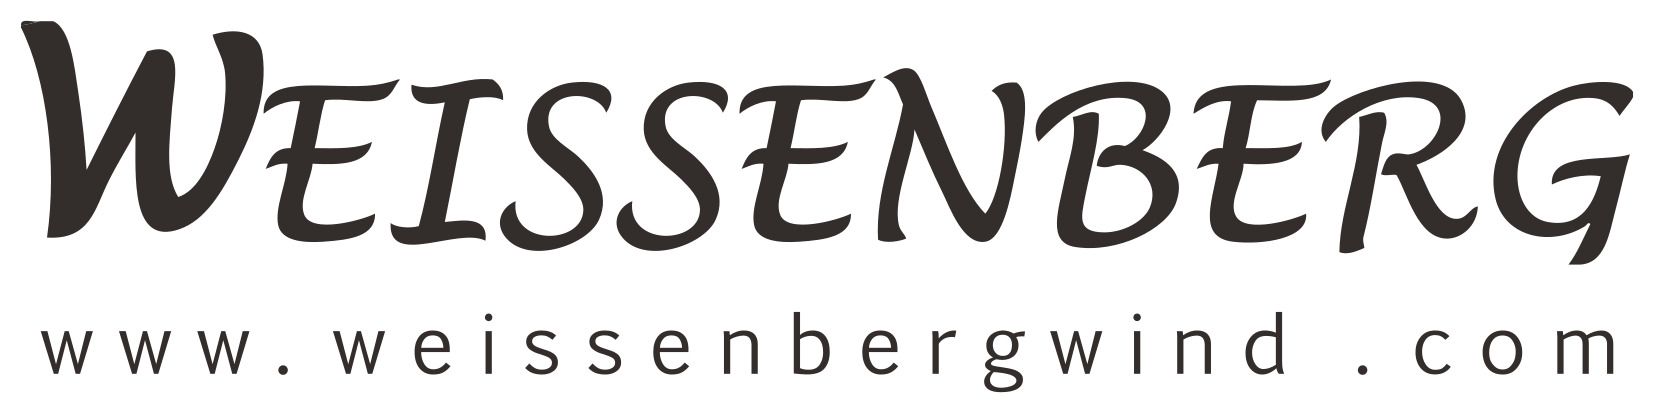 Weissenberg